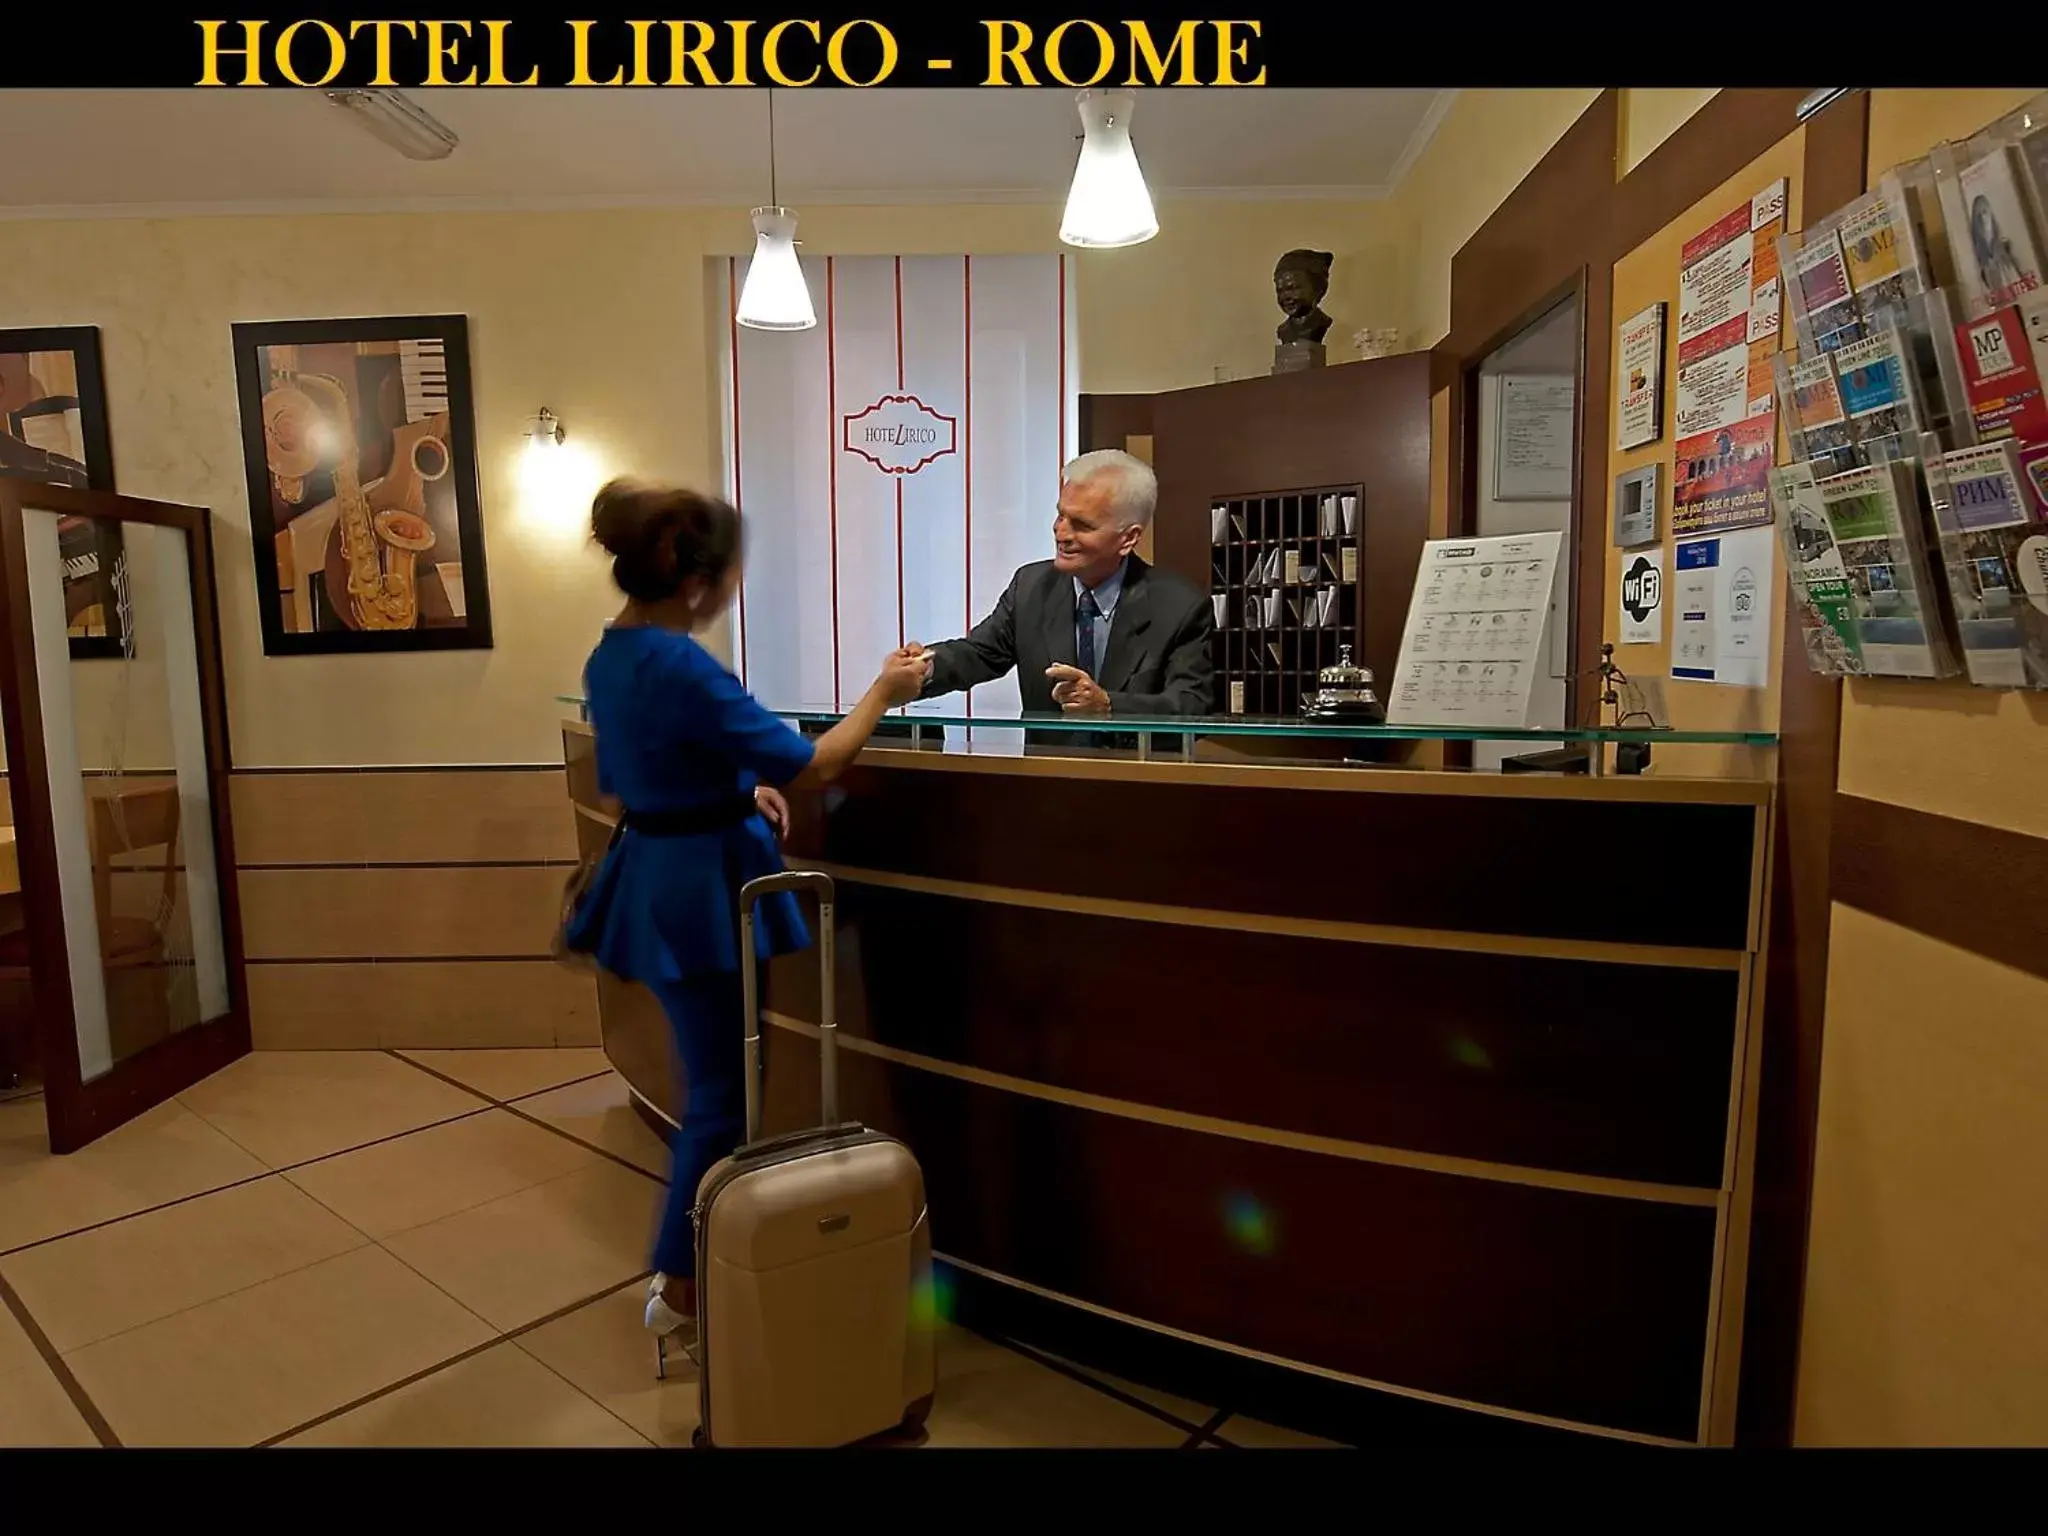 Lobby or reception in Hotel Lirico